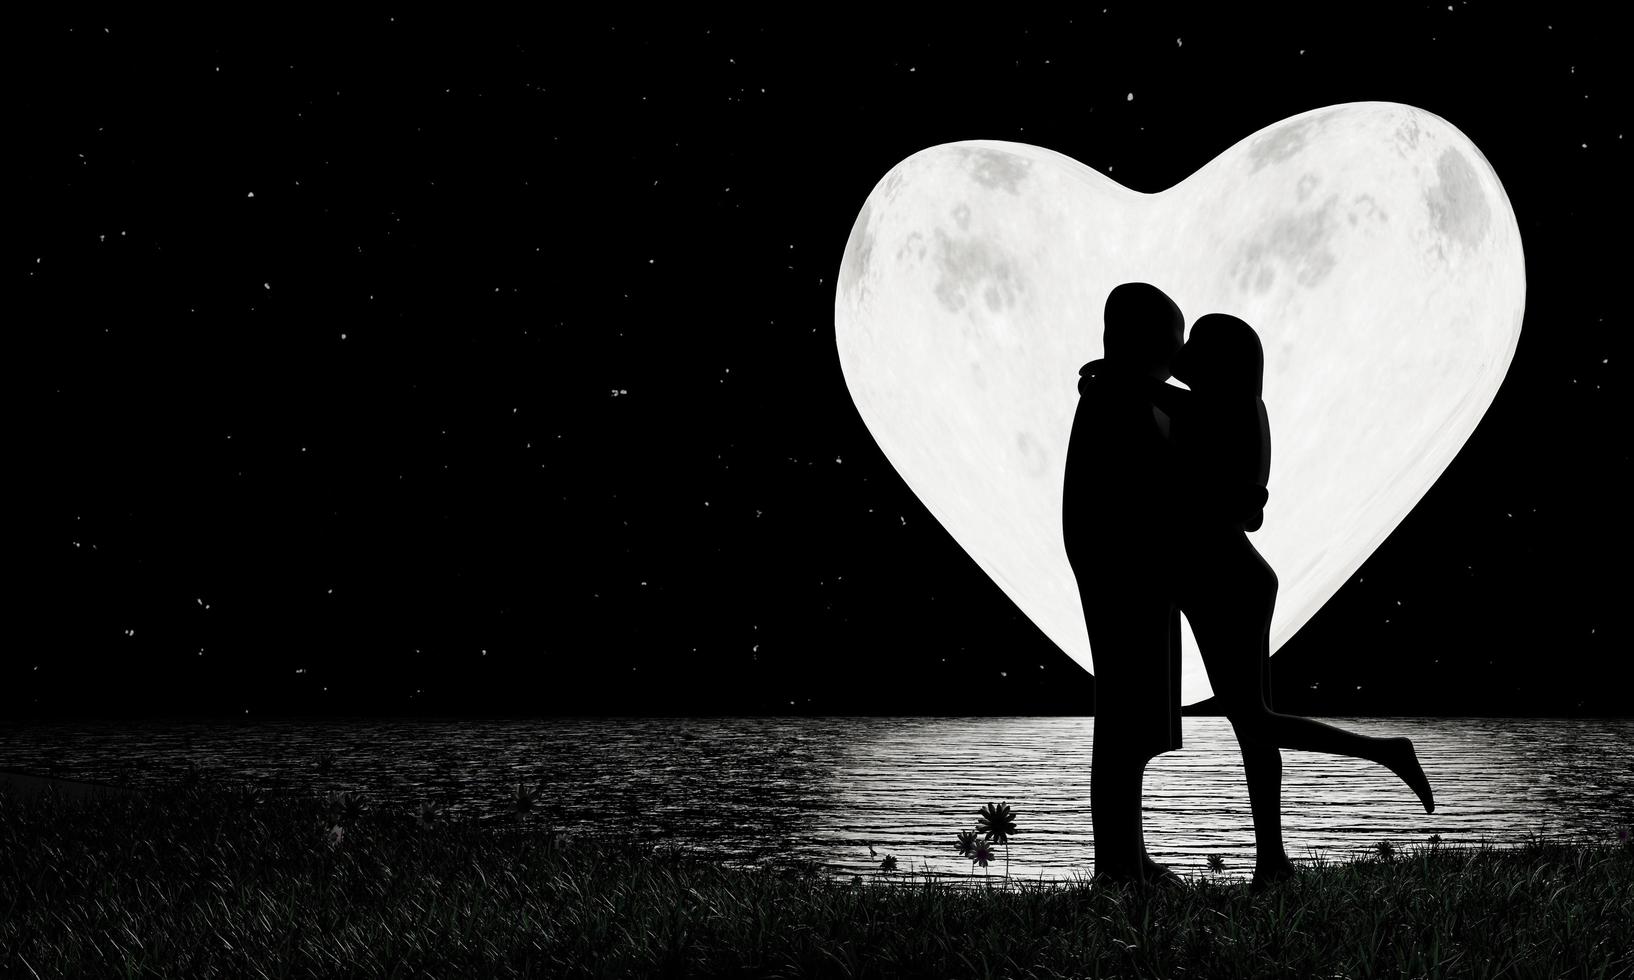 les amoureux de la silhouette s'embrassent romantiquement. forme de coeur pleine lune et une étoile pleine du ciel en arrière-plan. le reflet de la lune se reflète dans la rivière. propositions de romance et de mariage. rendu 3d photo